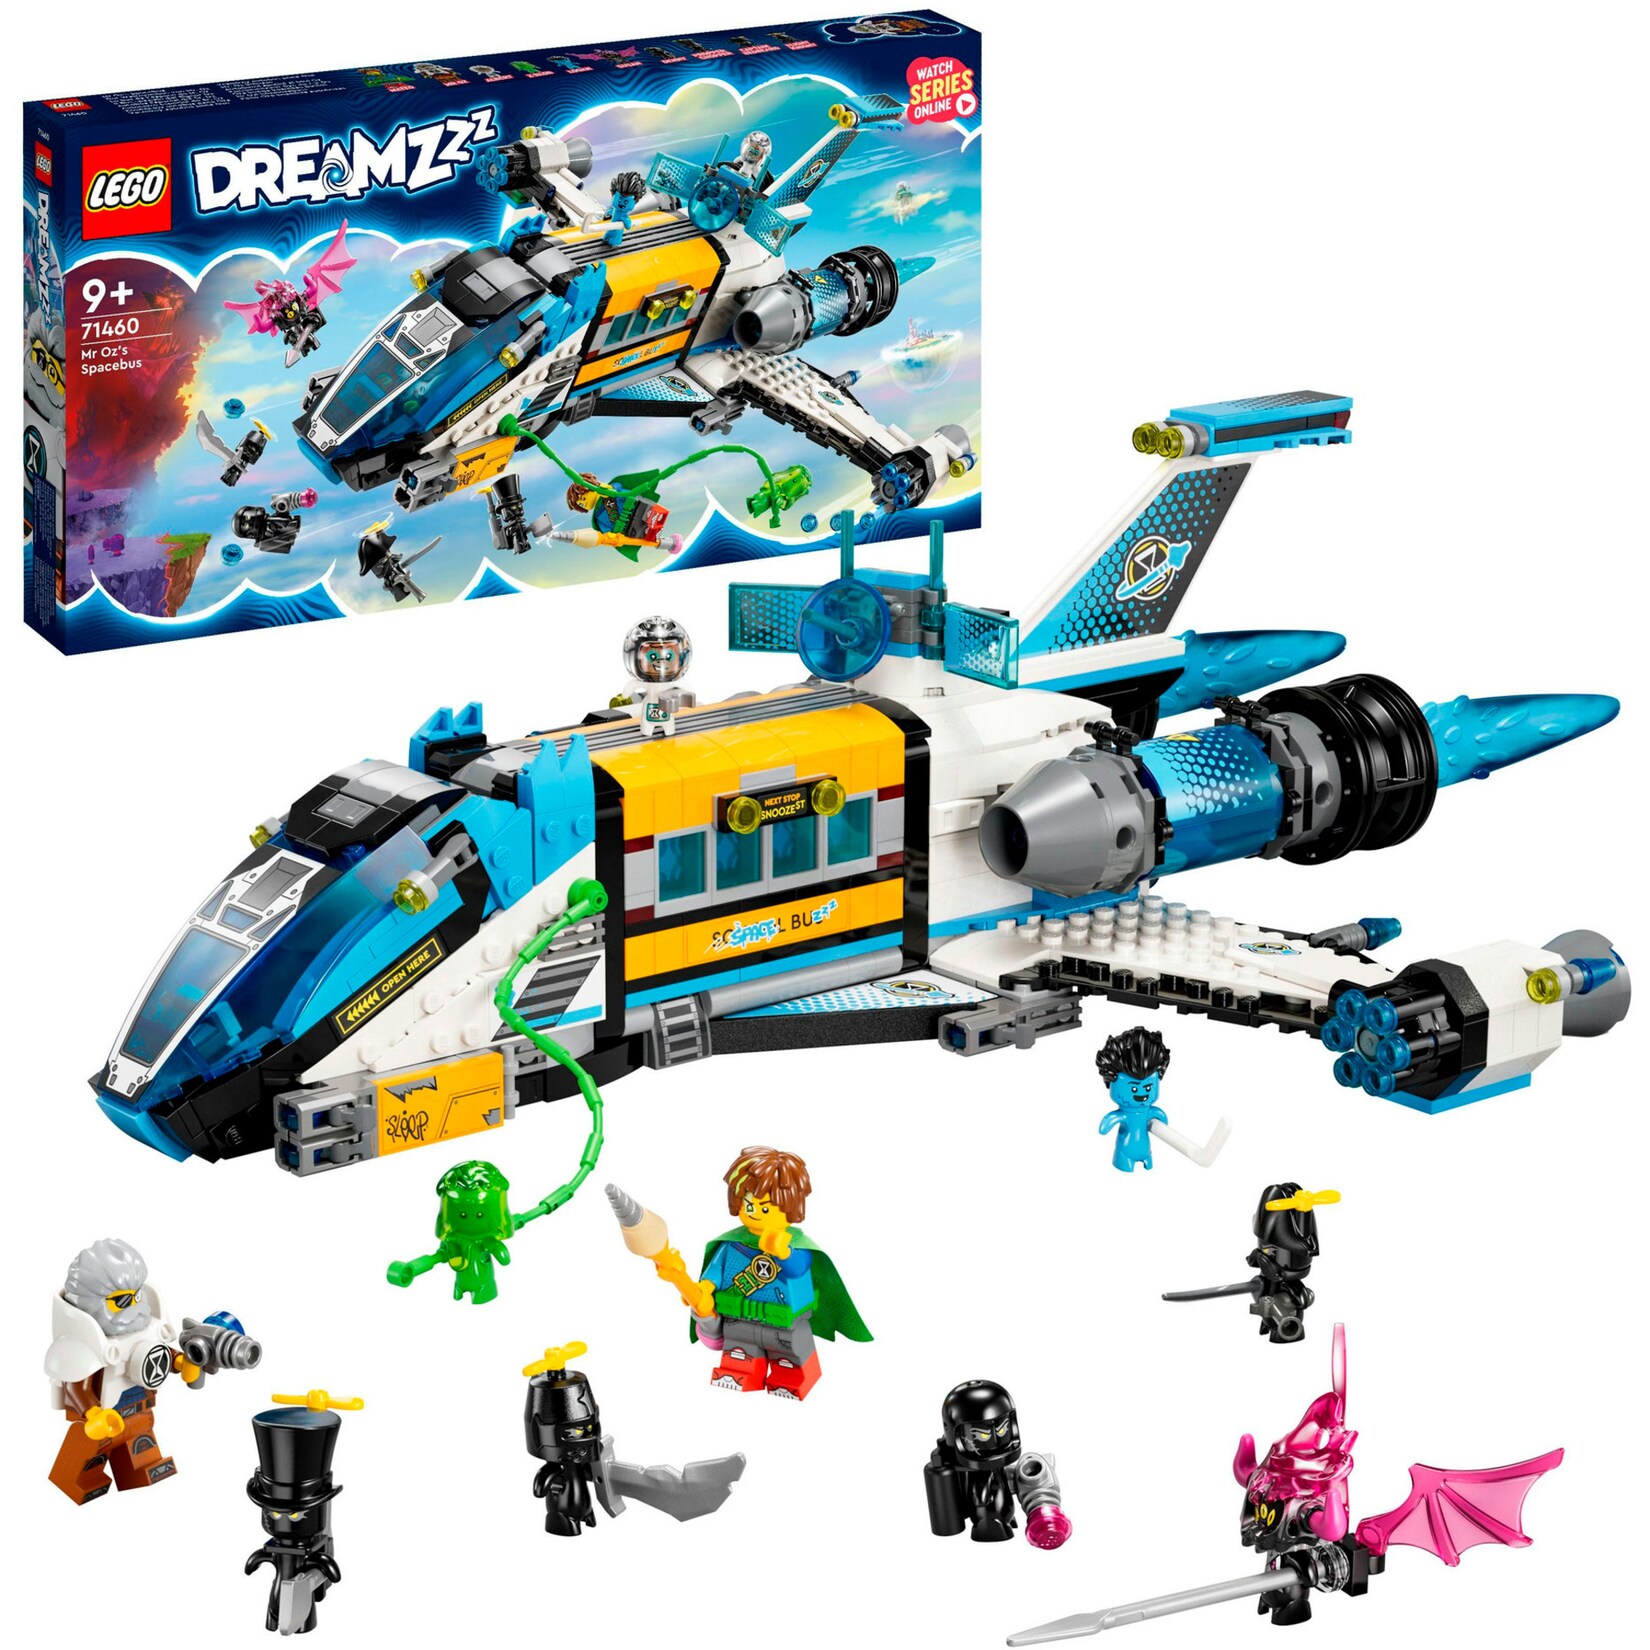 LEGO Konstruktionsspielzeug DREAMZzz Der Weltraumbus von Mr. Oz